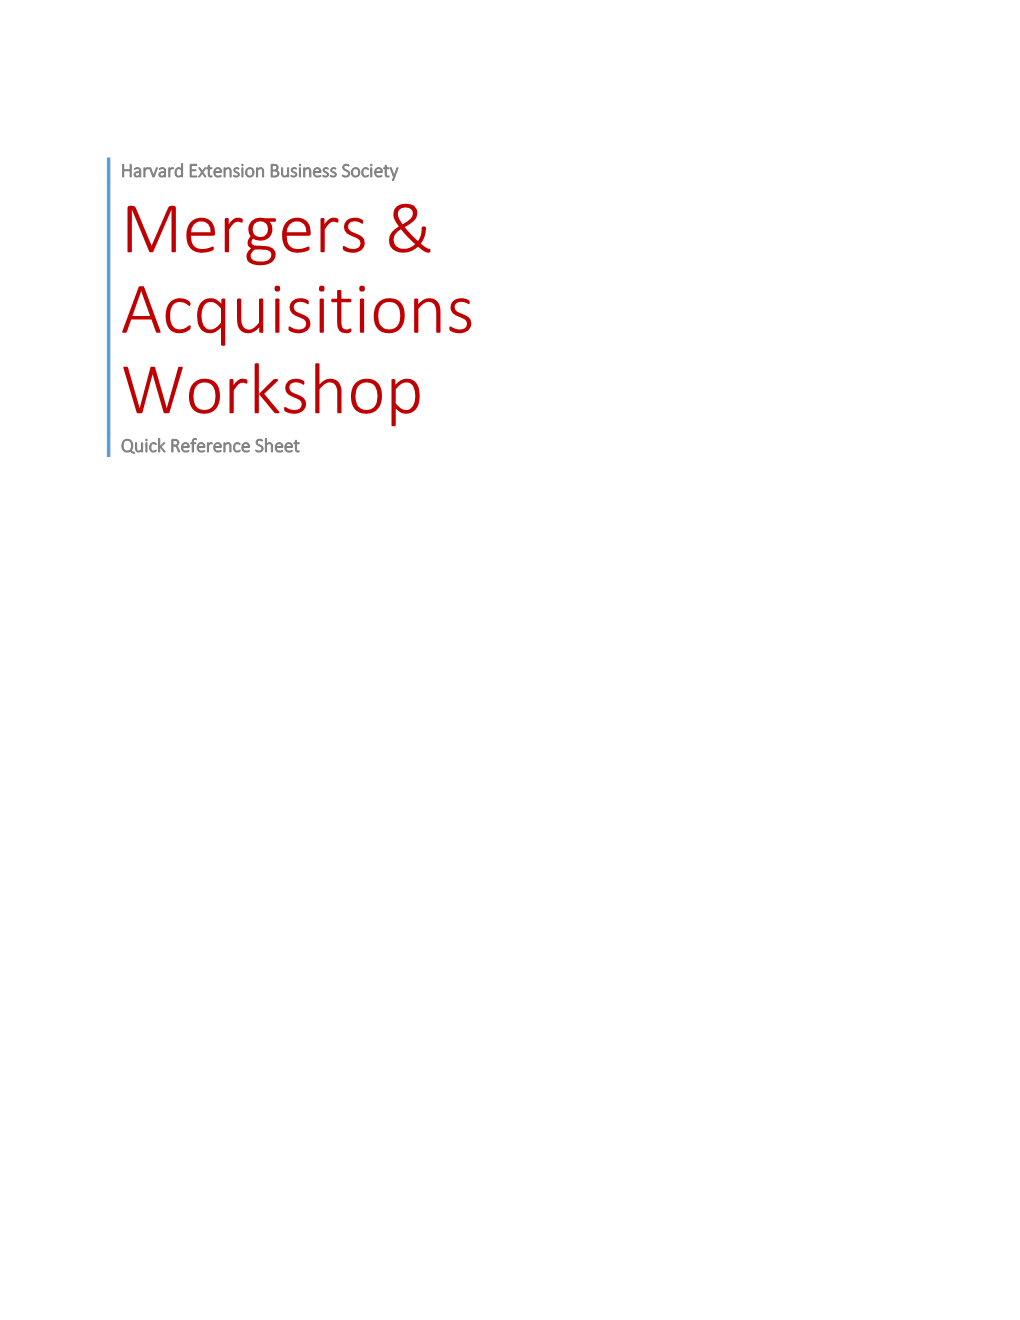 Mergers & Acquisitions Workshop